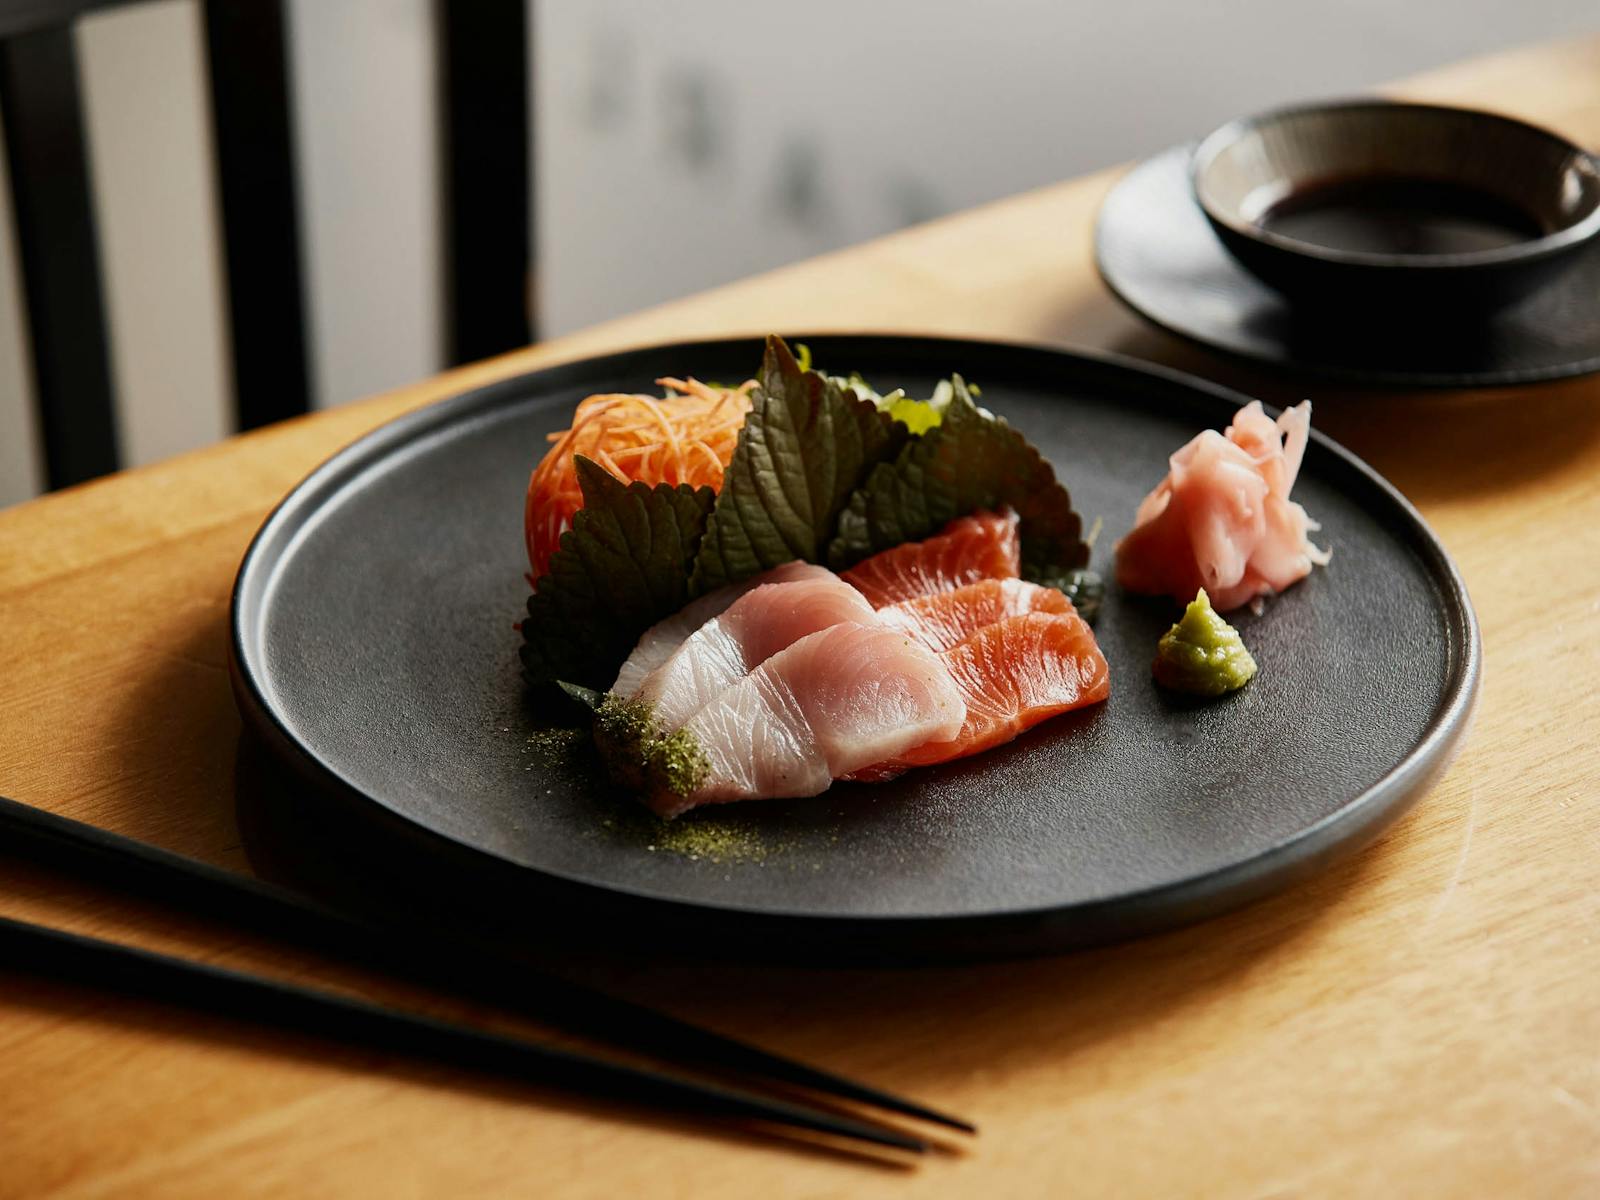 A plate of sashimi grade salmon and kingfish